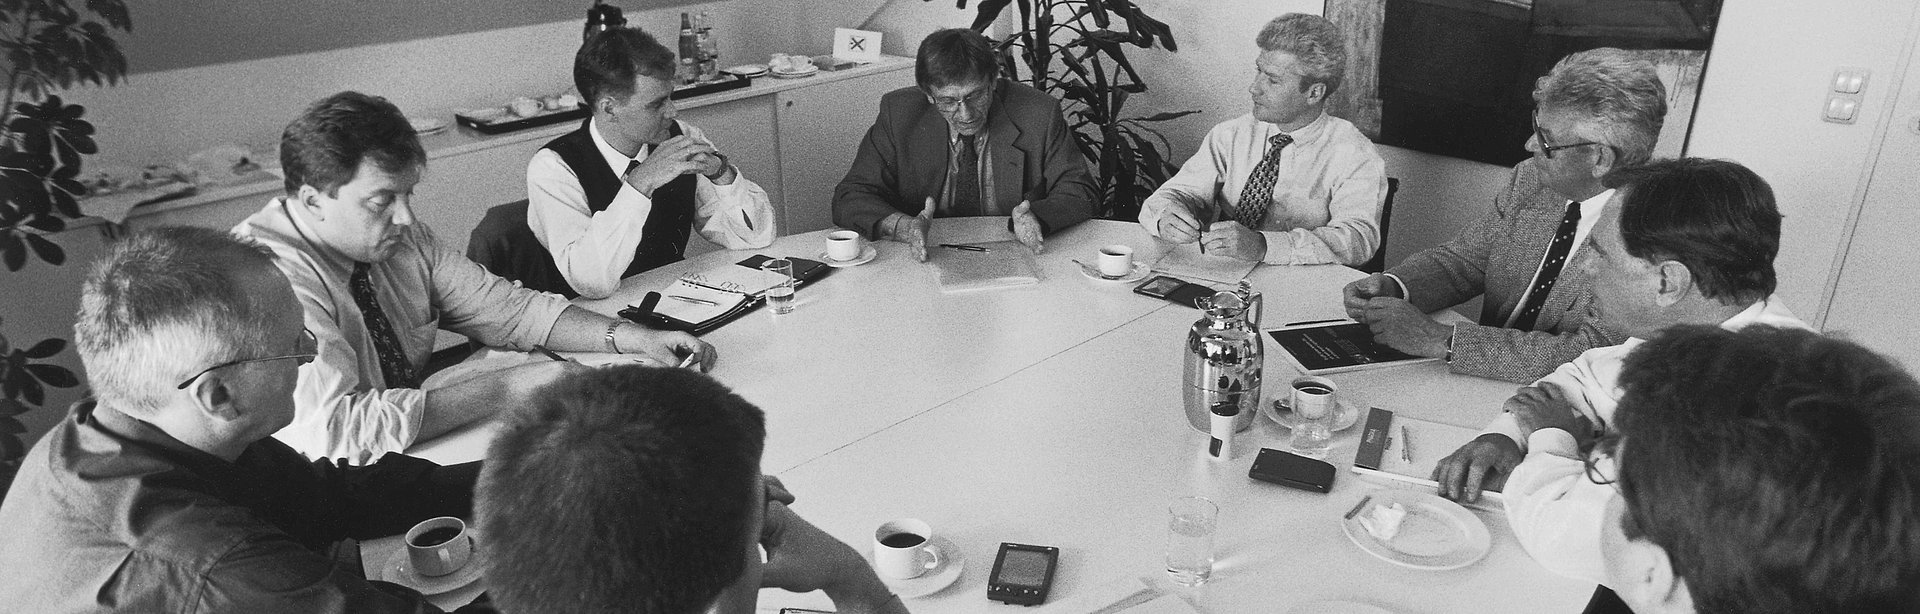 Schwarz-weiß Bild einer Teambesprechung im Büro